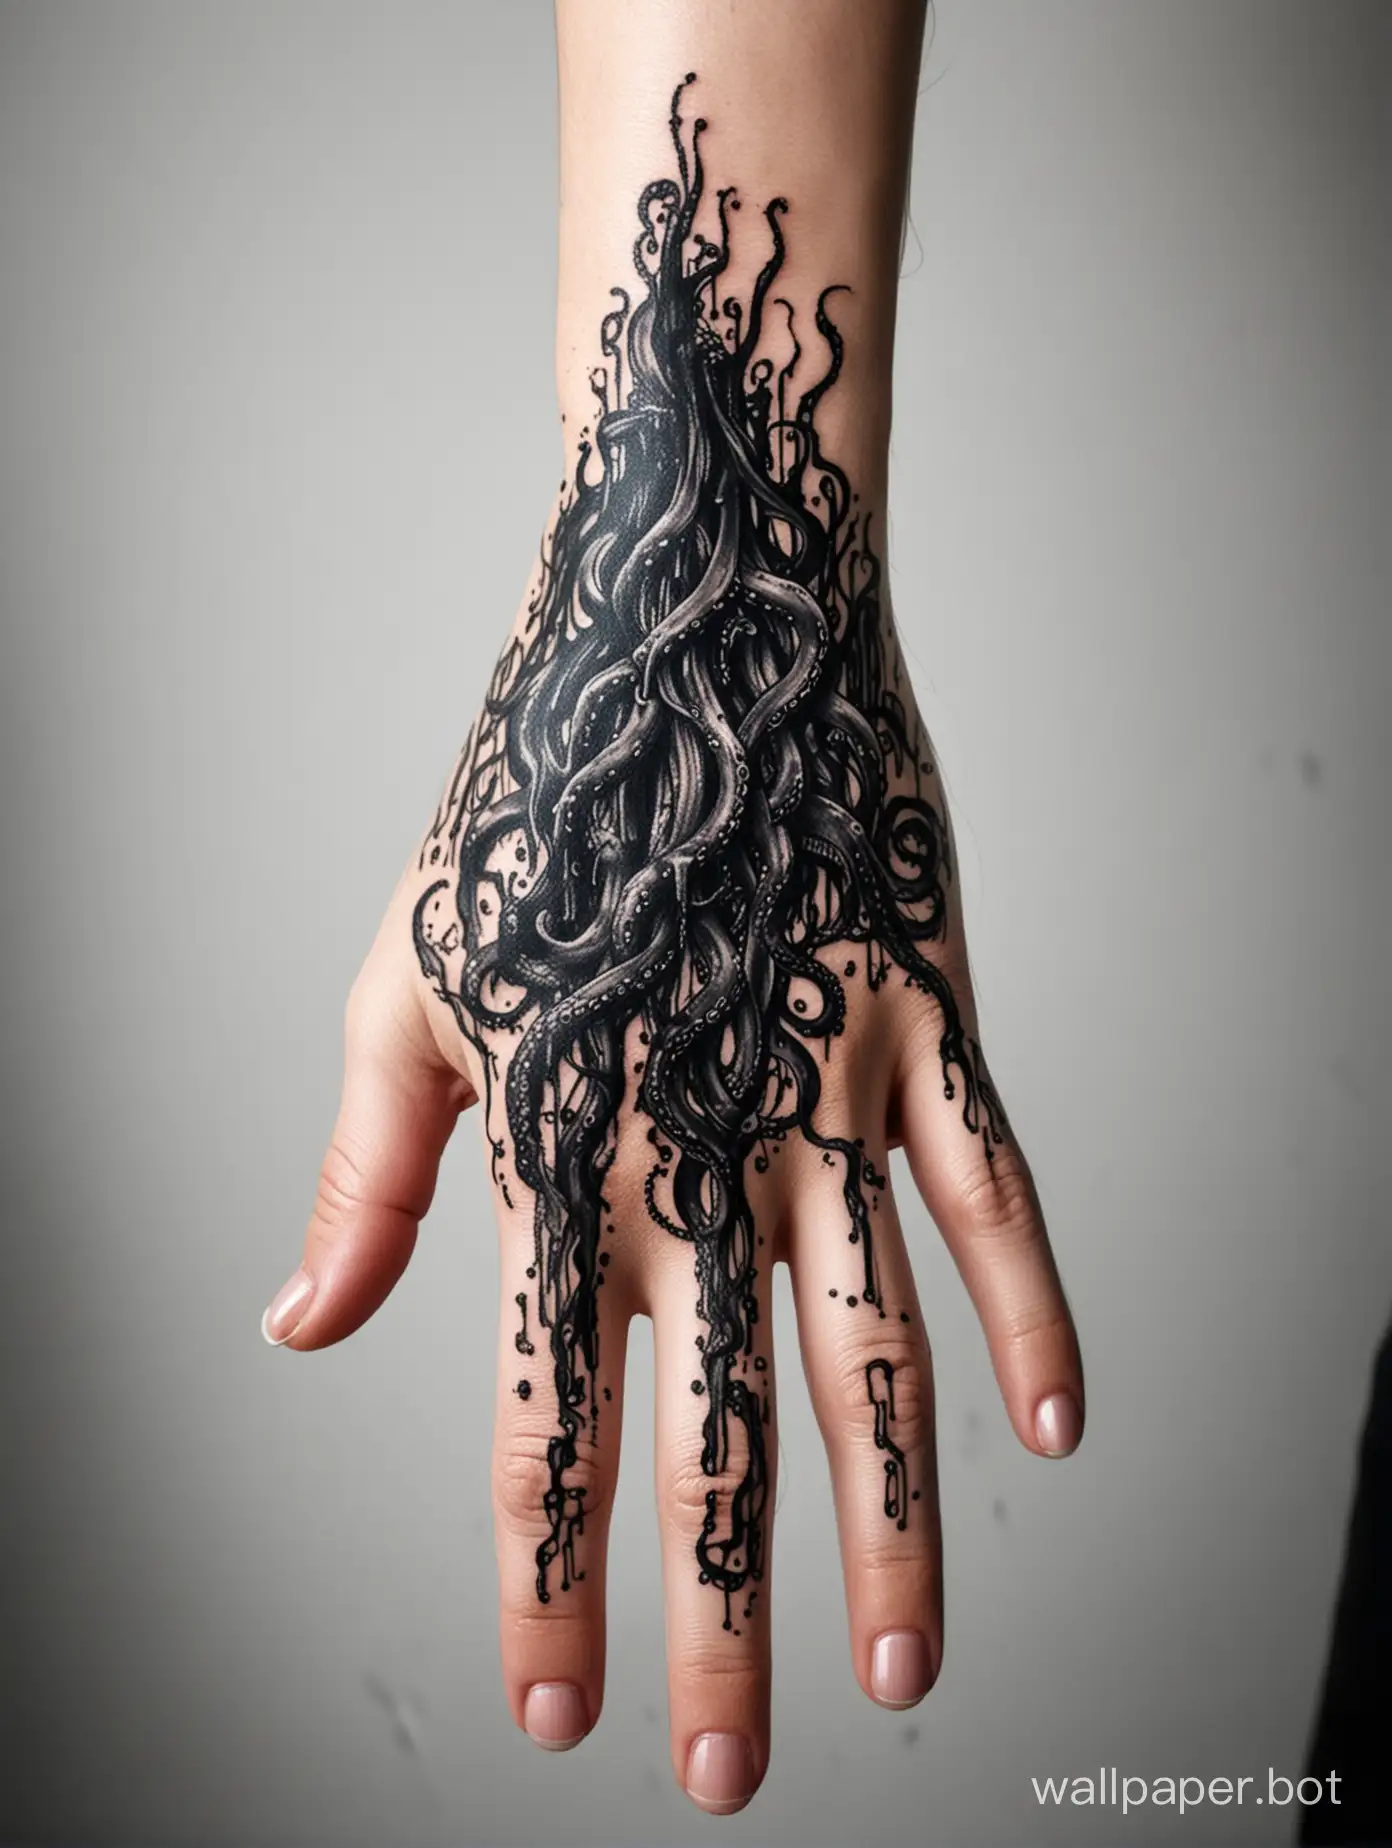  Hand tattoo, dripping dark waves tentacles, explosive dripping black, tattoo hand, blackwork, masterpiece, white background